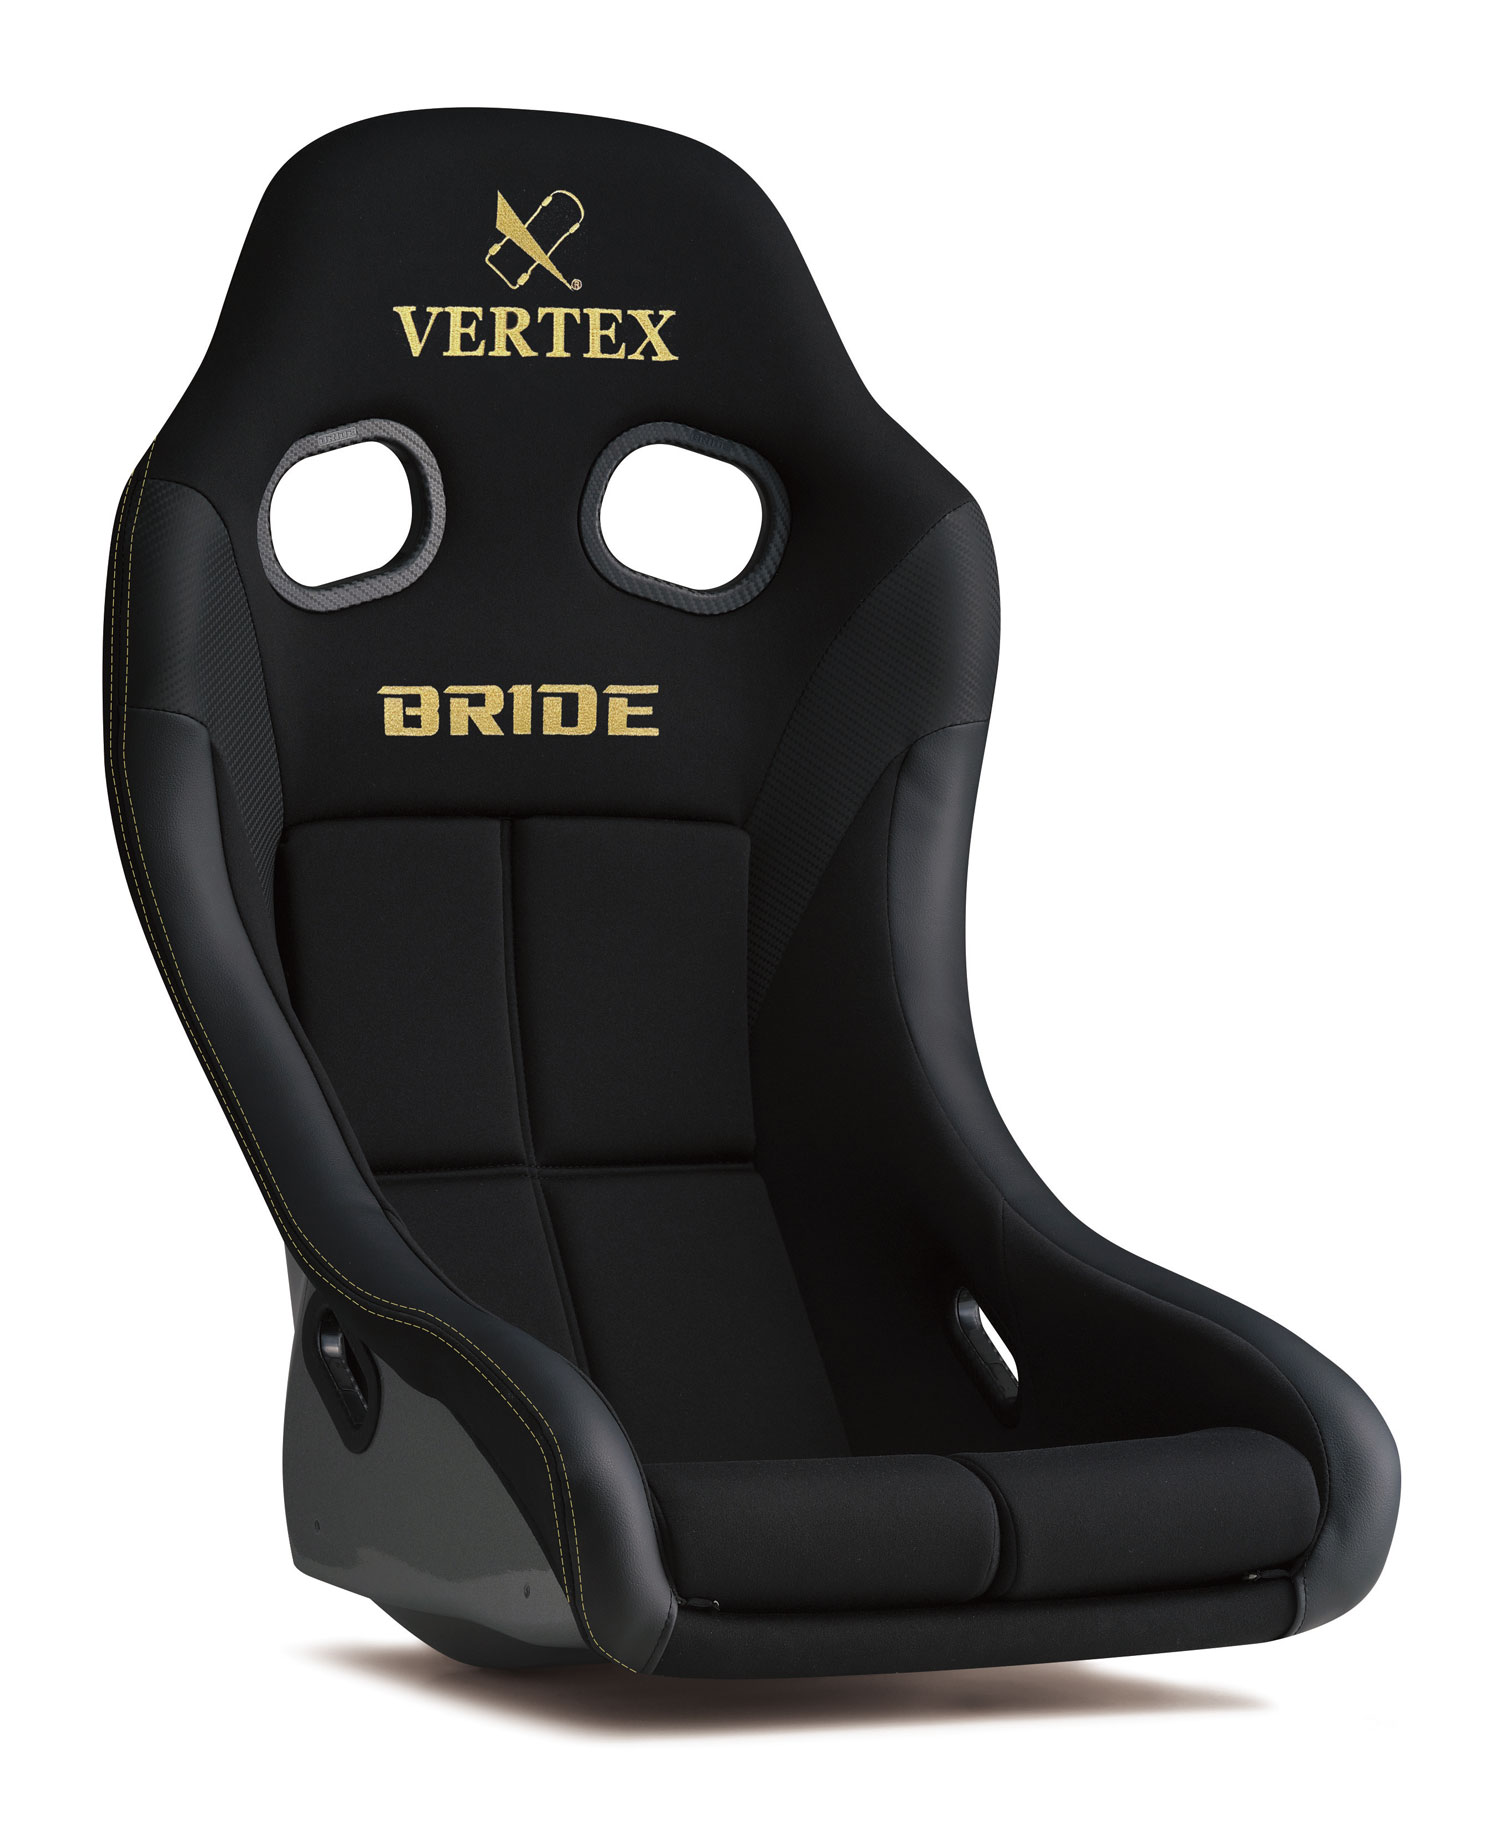 VERTEX x BRIDE ZIEG IV　WIDE／ヴェルテックス コラボレーションシート ジーグ４ワイド